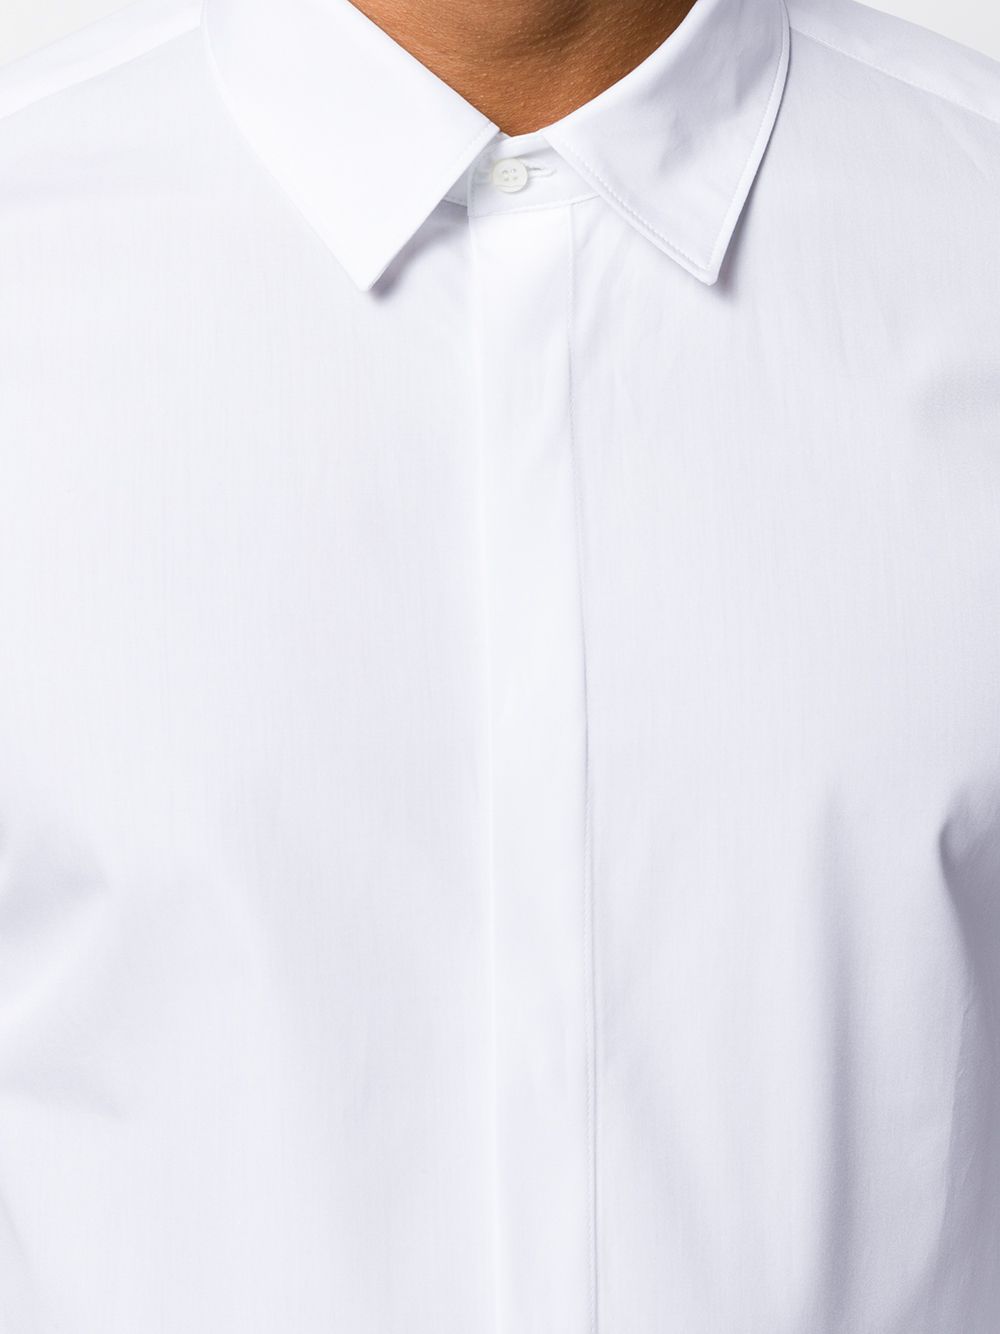 фото Neil barrett рубашка узкого кроя с длинными рукавами